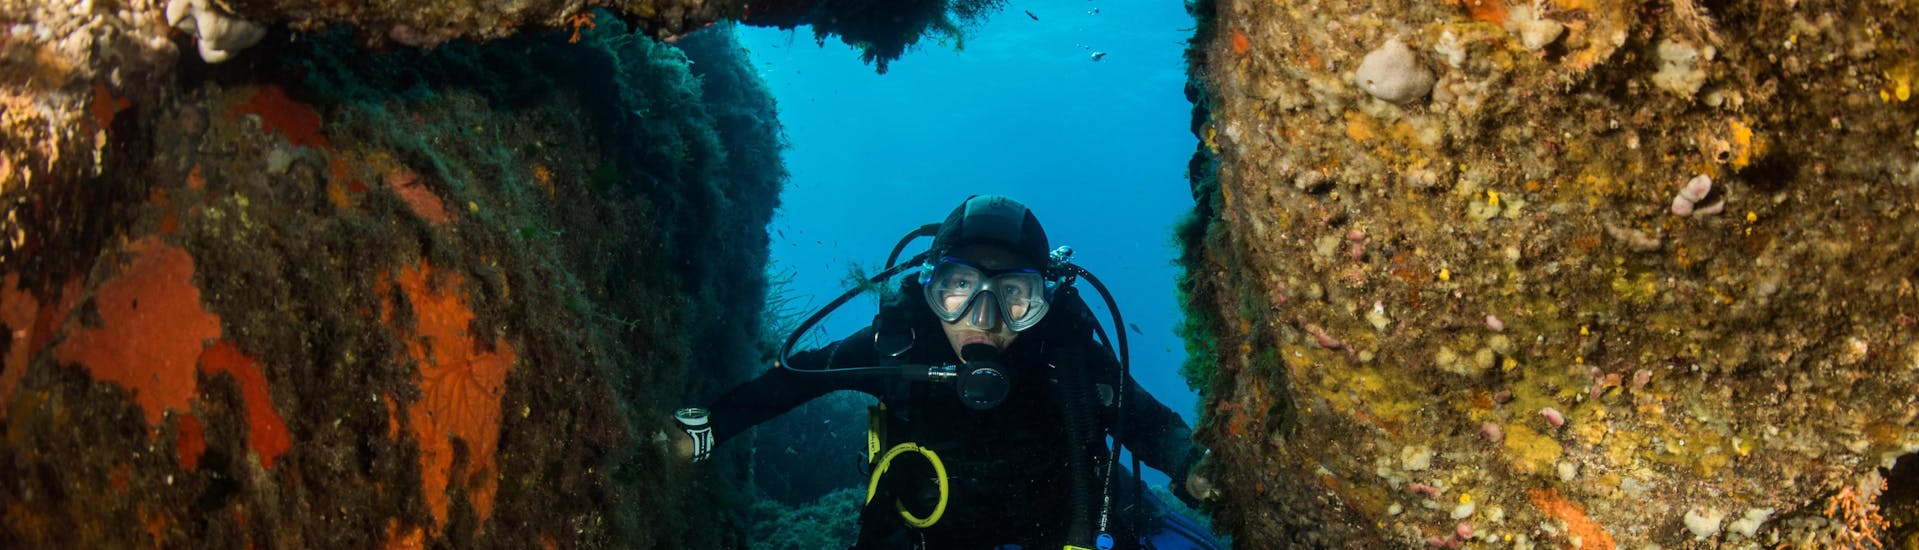 Un plongeur profite des fonds marins de Porto-Vecchio en Corse pendant une excursion de plongée.